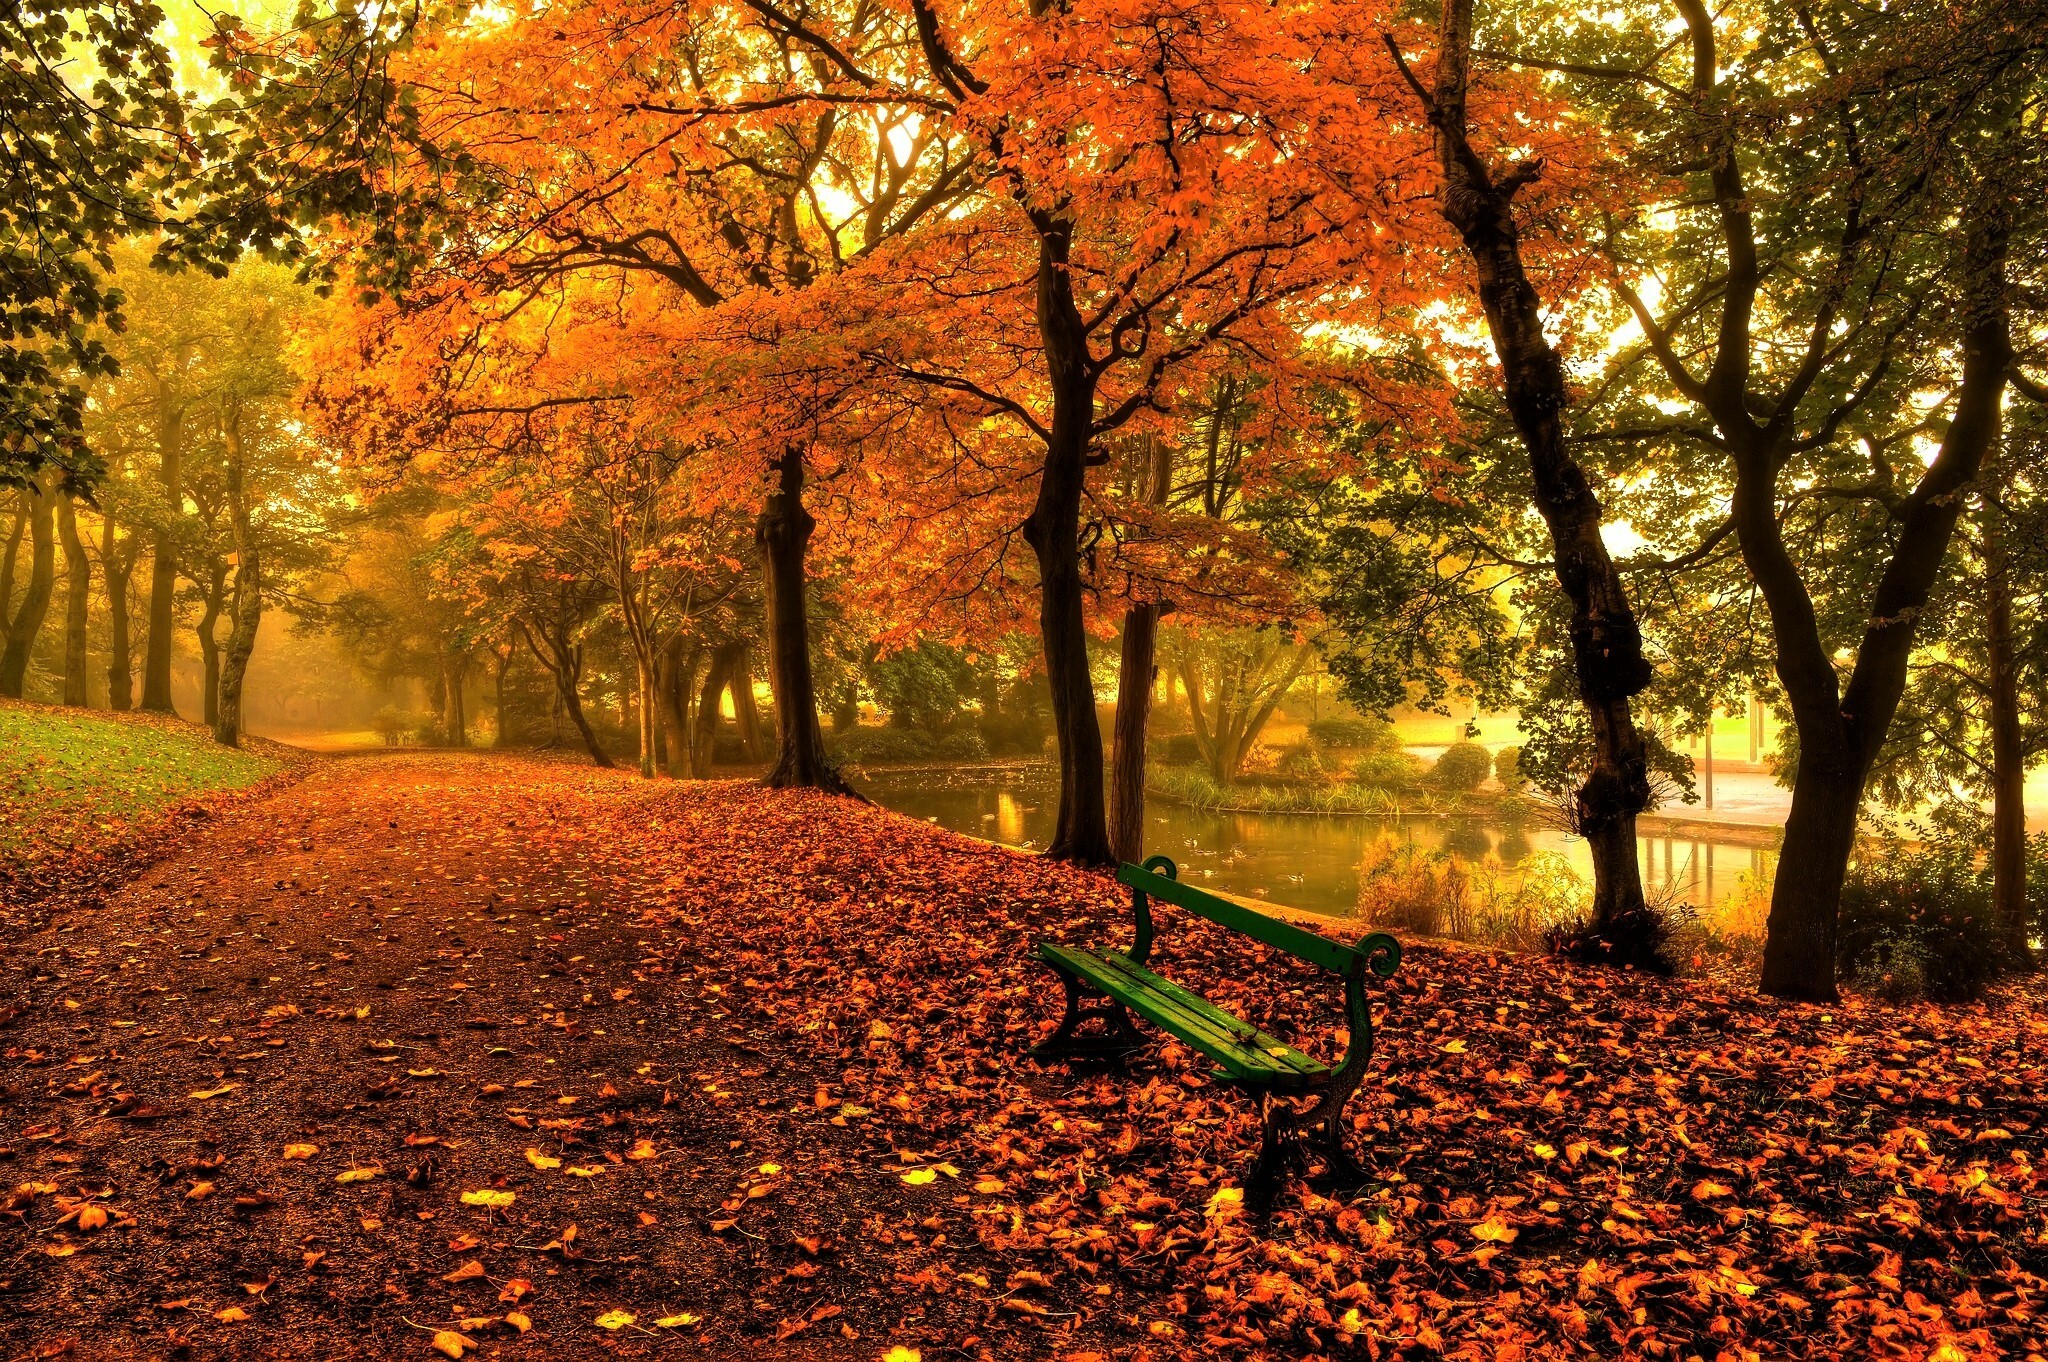 Autumn park beauty, Bench under golden trees, HD wallpaper magic, Nature's artistry, 2050x1370 HD Desktop